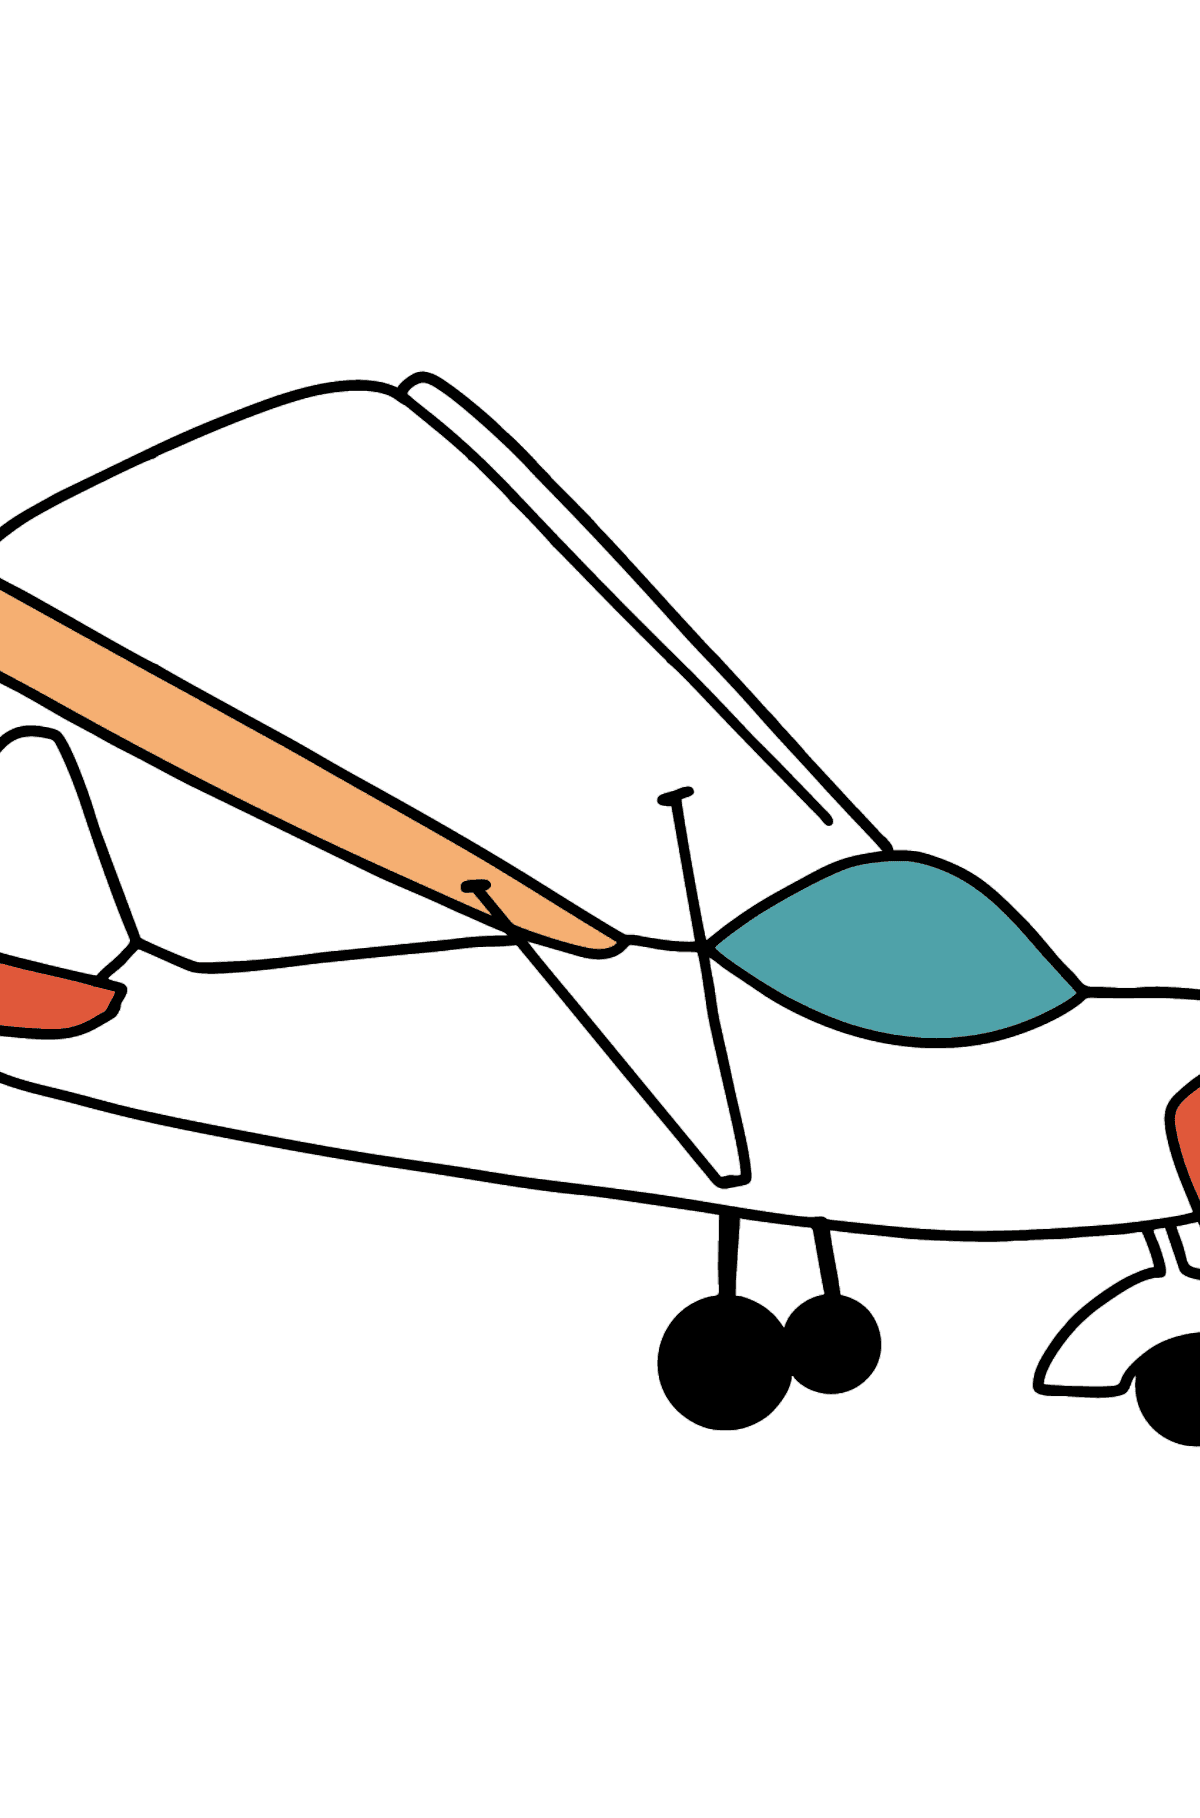 Dibujo de Avión pequeño para colorear - Dibujos para Colorear para Niños